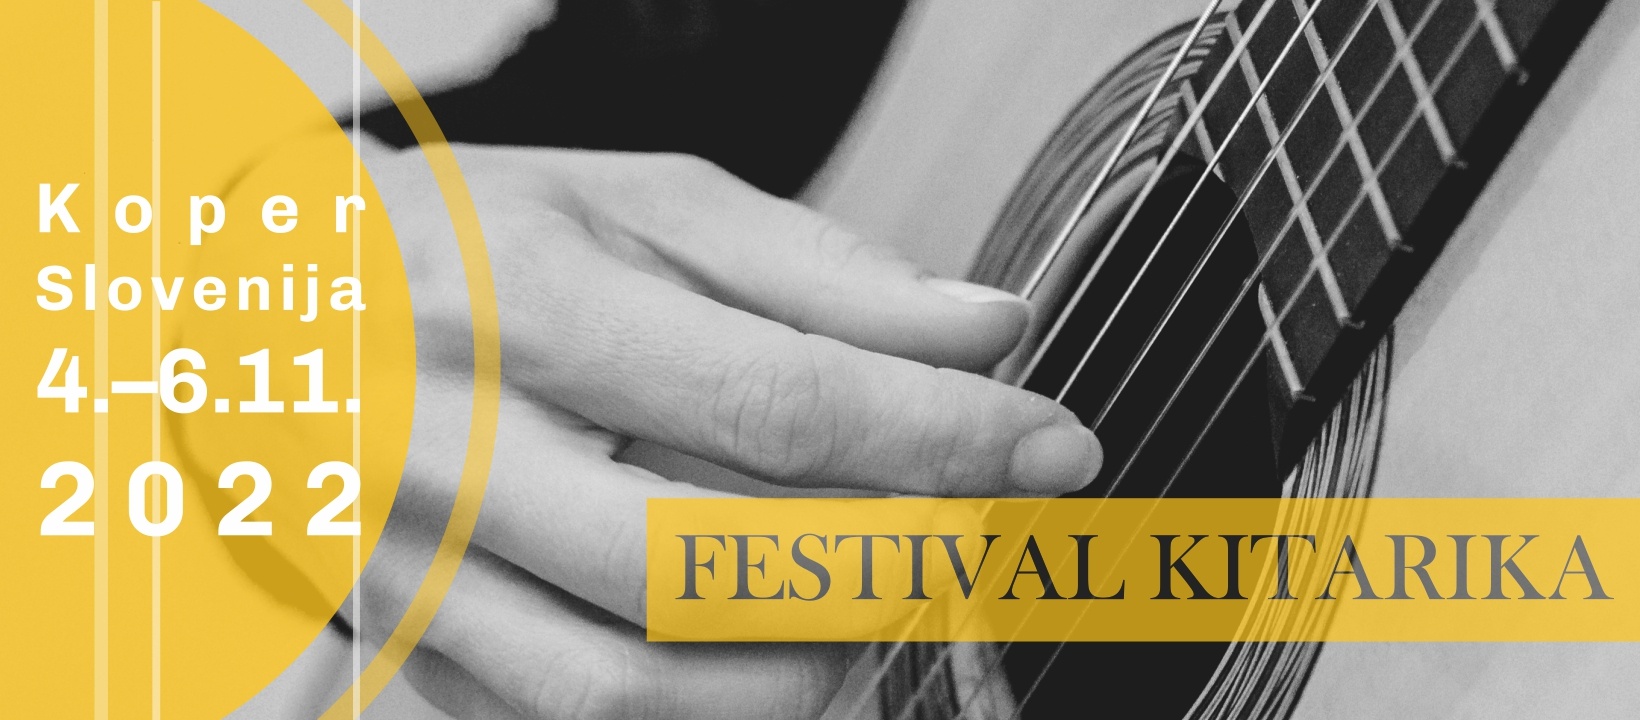 V Kopru se bodo na Festivalu Kitarika 2022 predstavili virtuozi klasične kitare